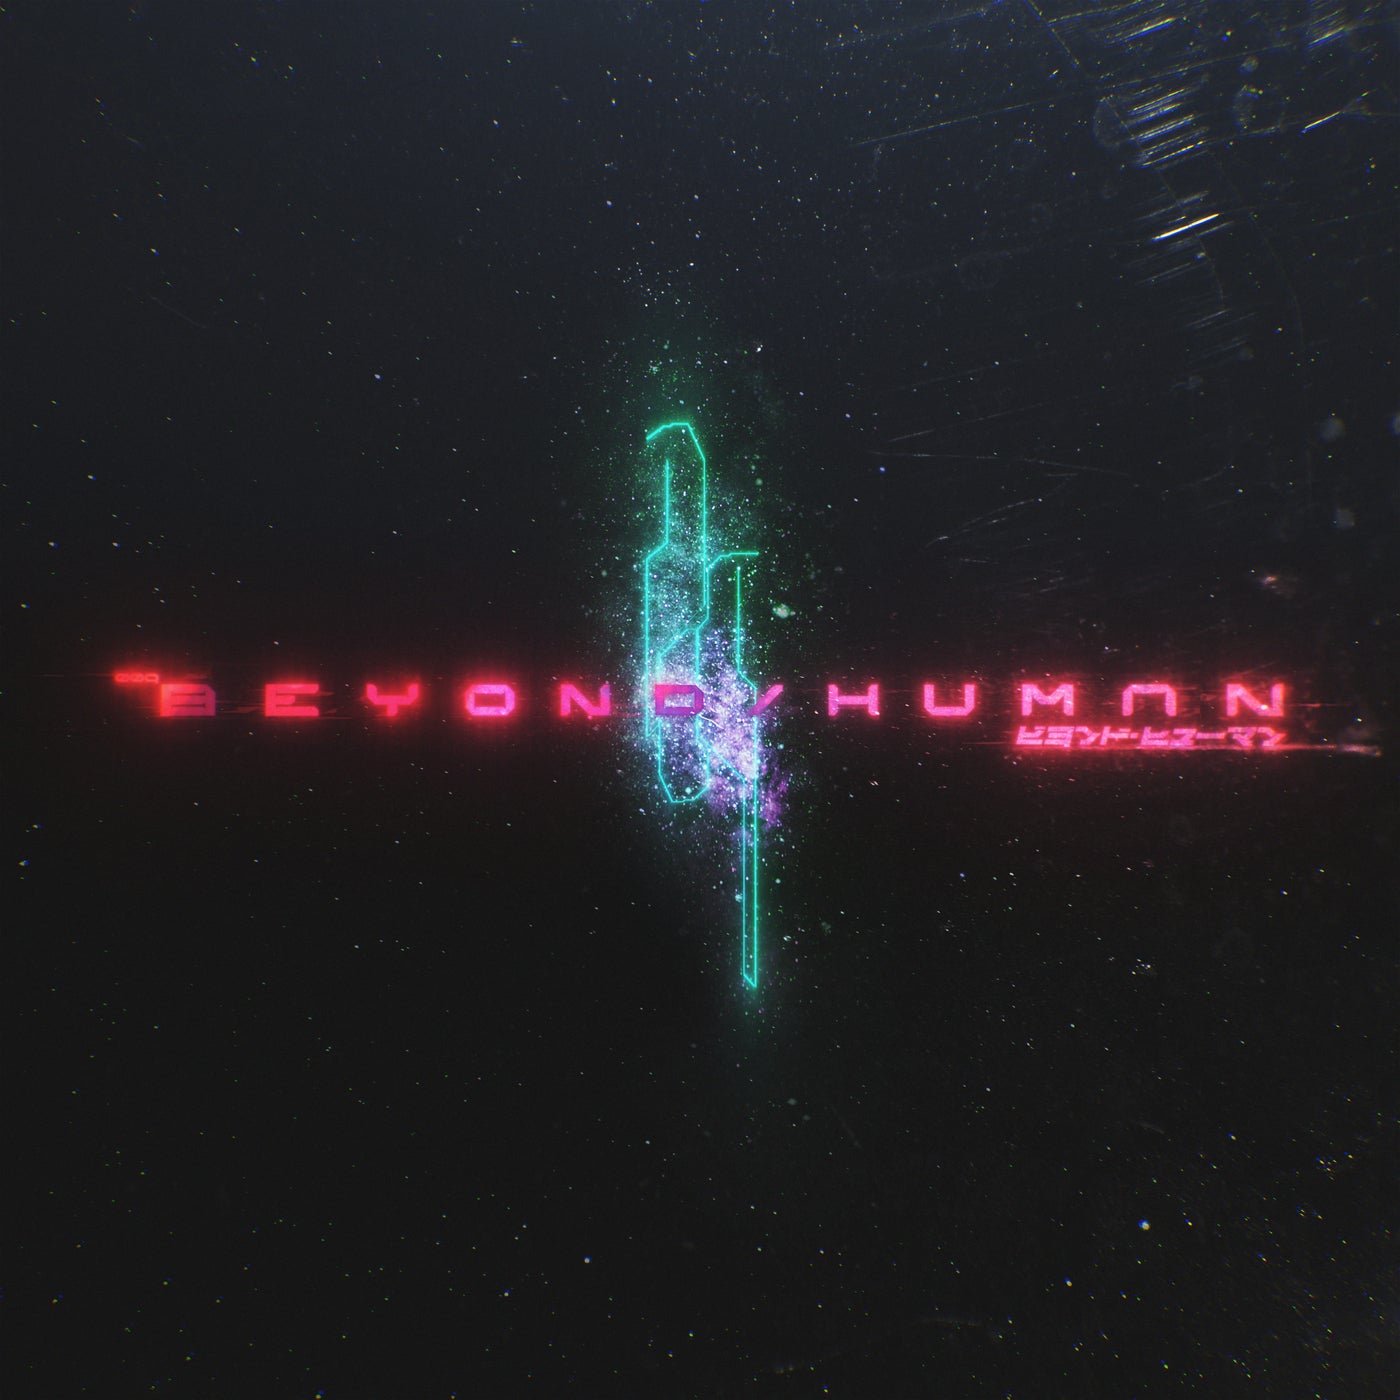 Beyond / Human